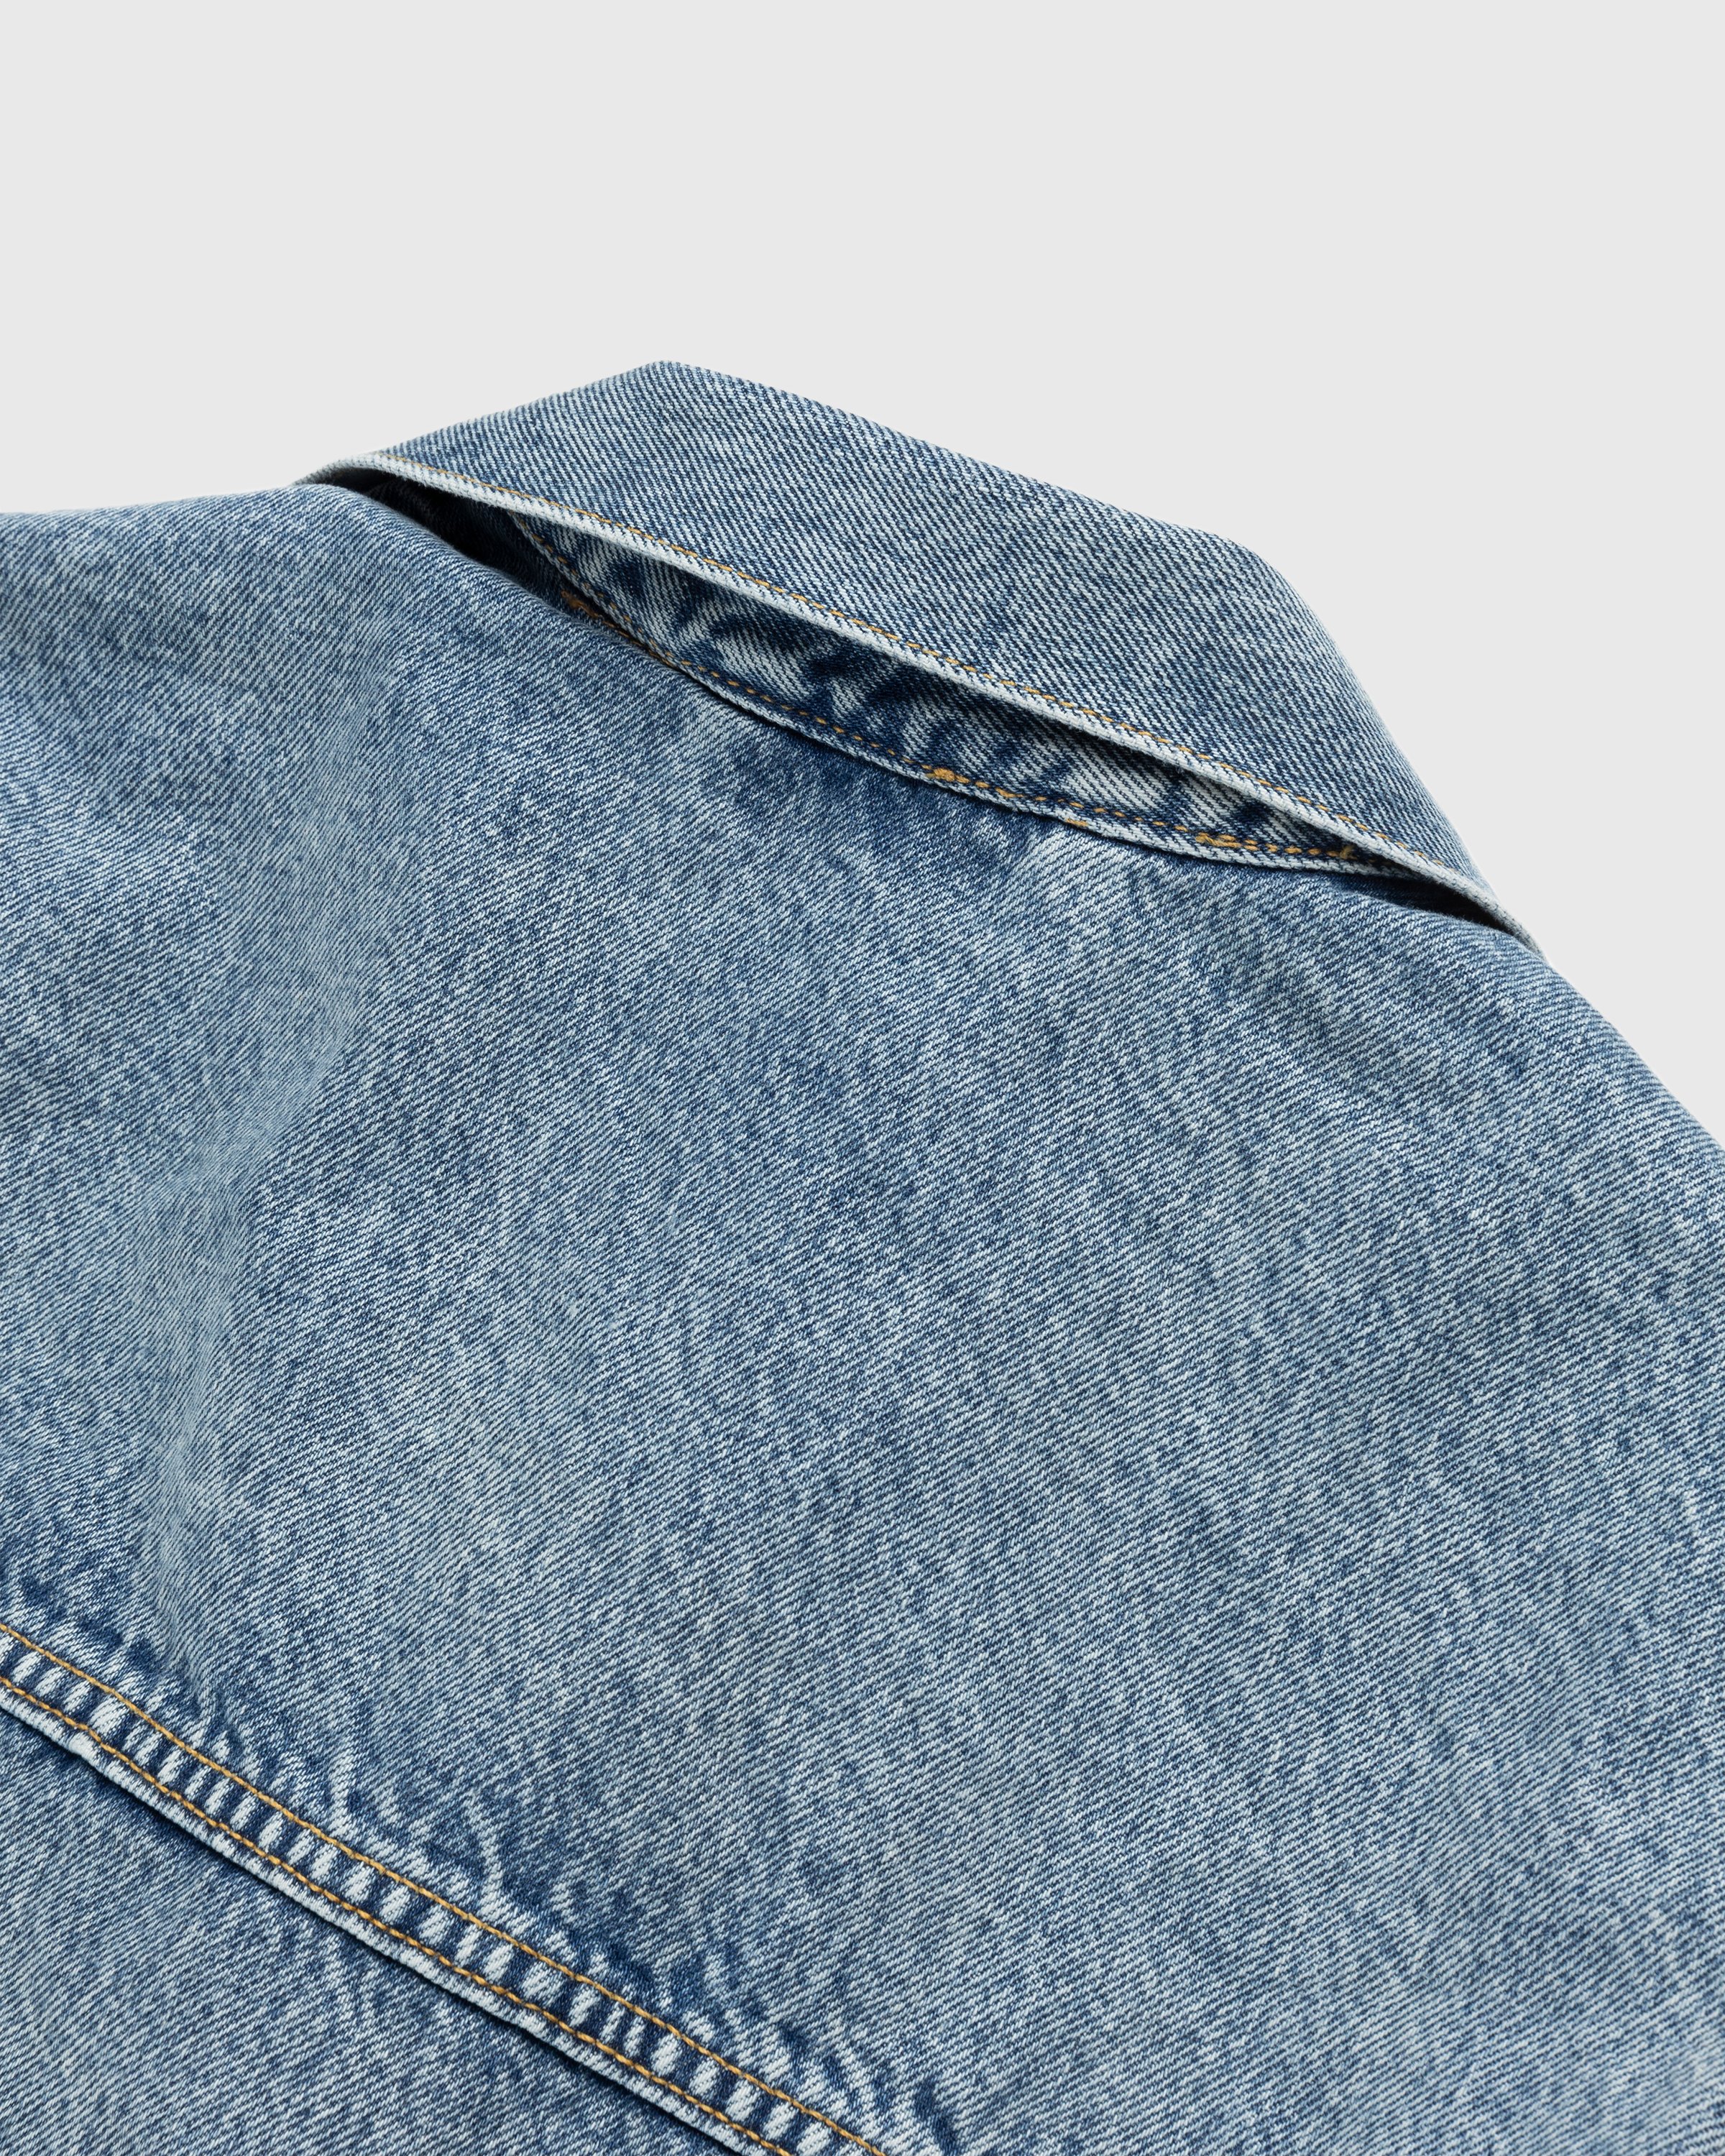 Levi's x AMBUSH - Trucker Jacket Mid Indigo - Clothing - Blue - Image 7